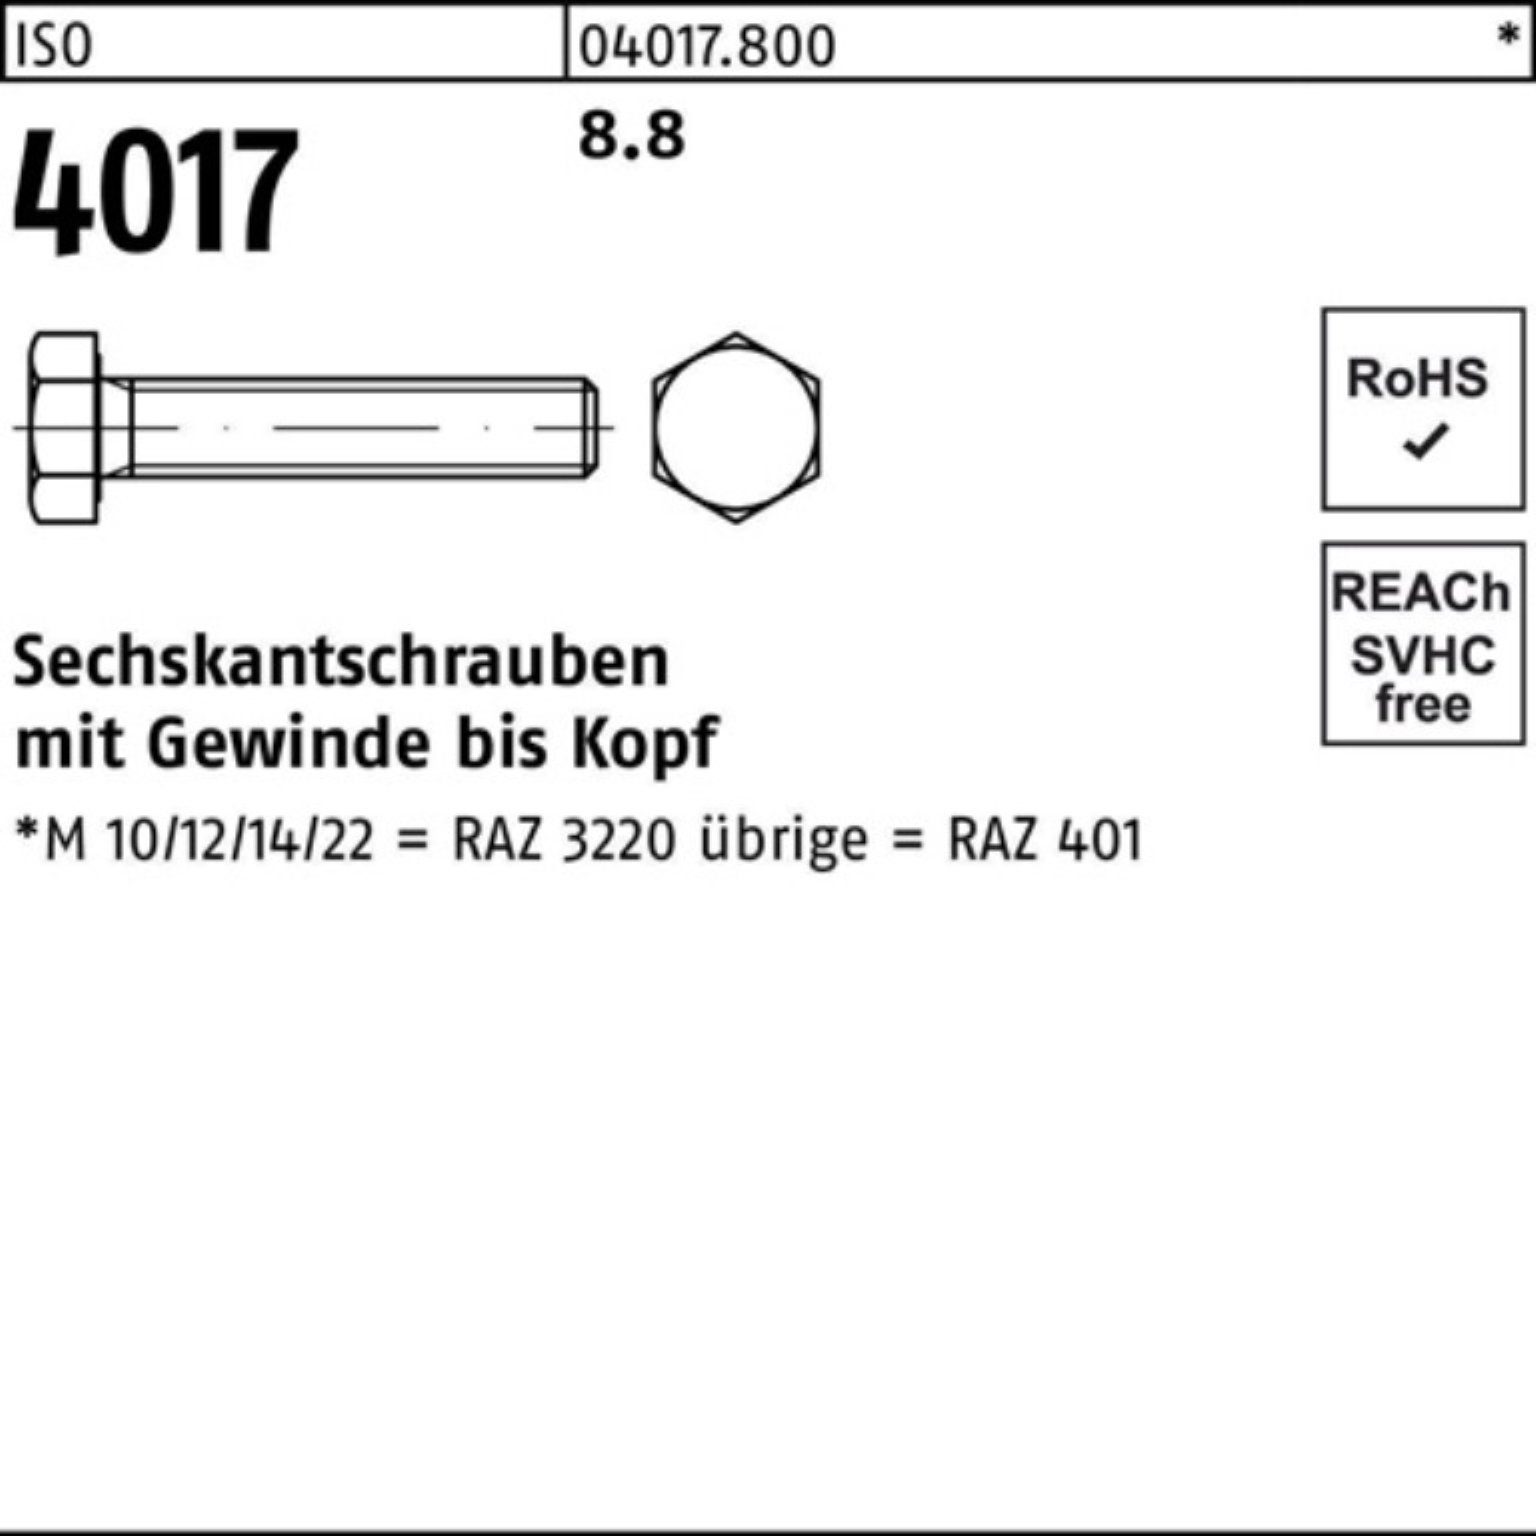 1 4017 401 ISO Bufab 100 M27x 100er 8.8 Sechskantschraube Sechskantschraube Stück VG Pack ISO